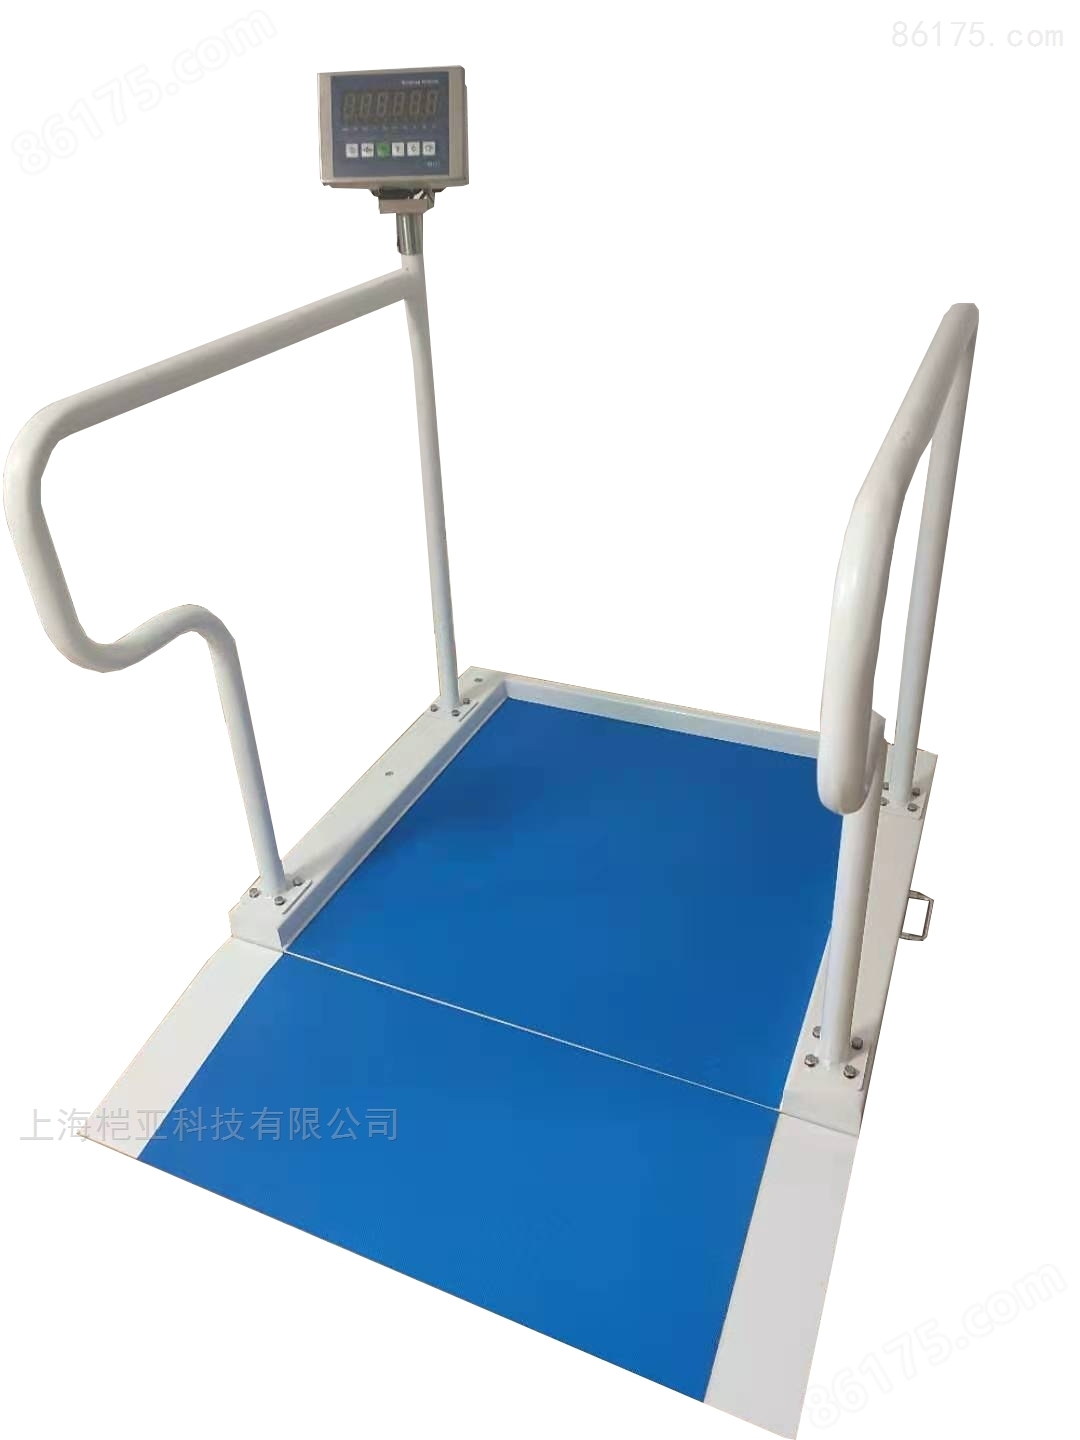 透析用的体重电子秤-医疗轮椅称